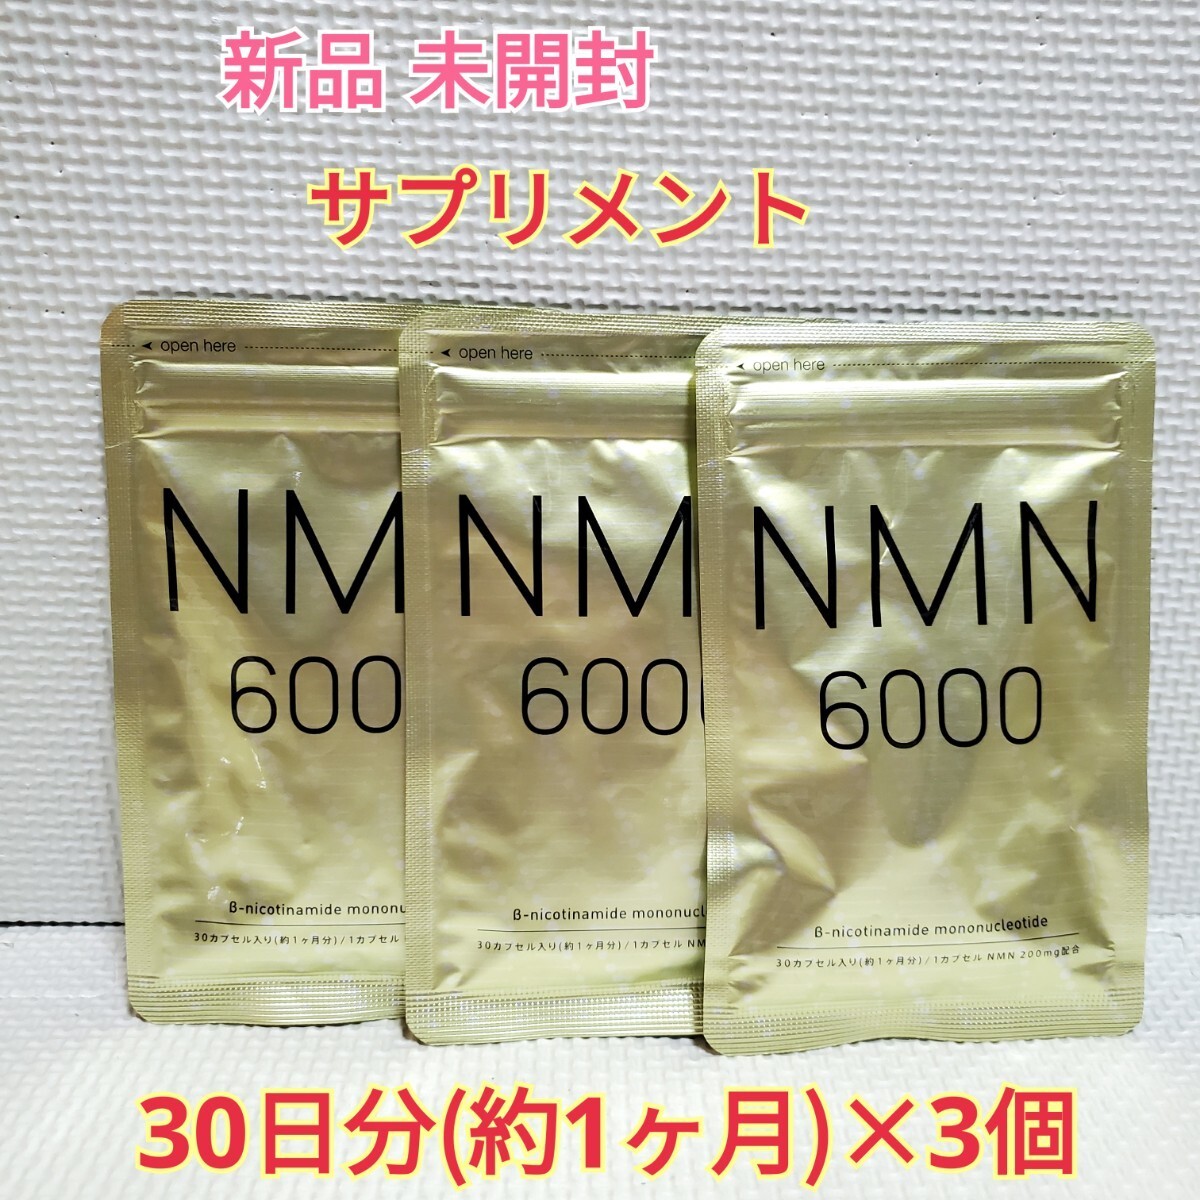 送料無料 新品 NMN サプリ ニコチンアミドモノヌクレオチド 3ヶ月 シードコムス サプリメント ダイエットサポート エイジングケアサポート